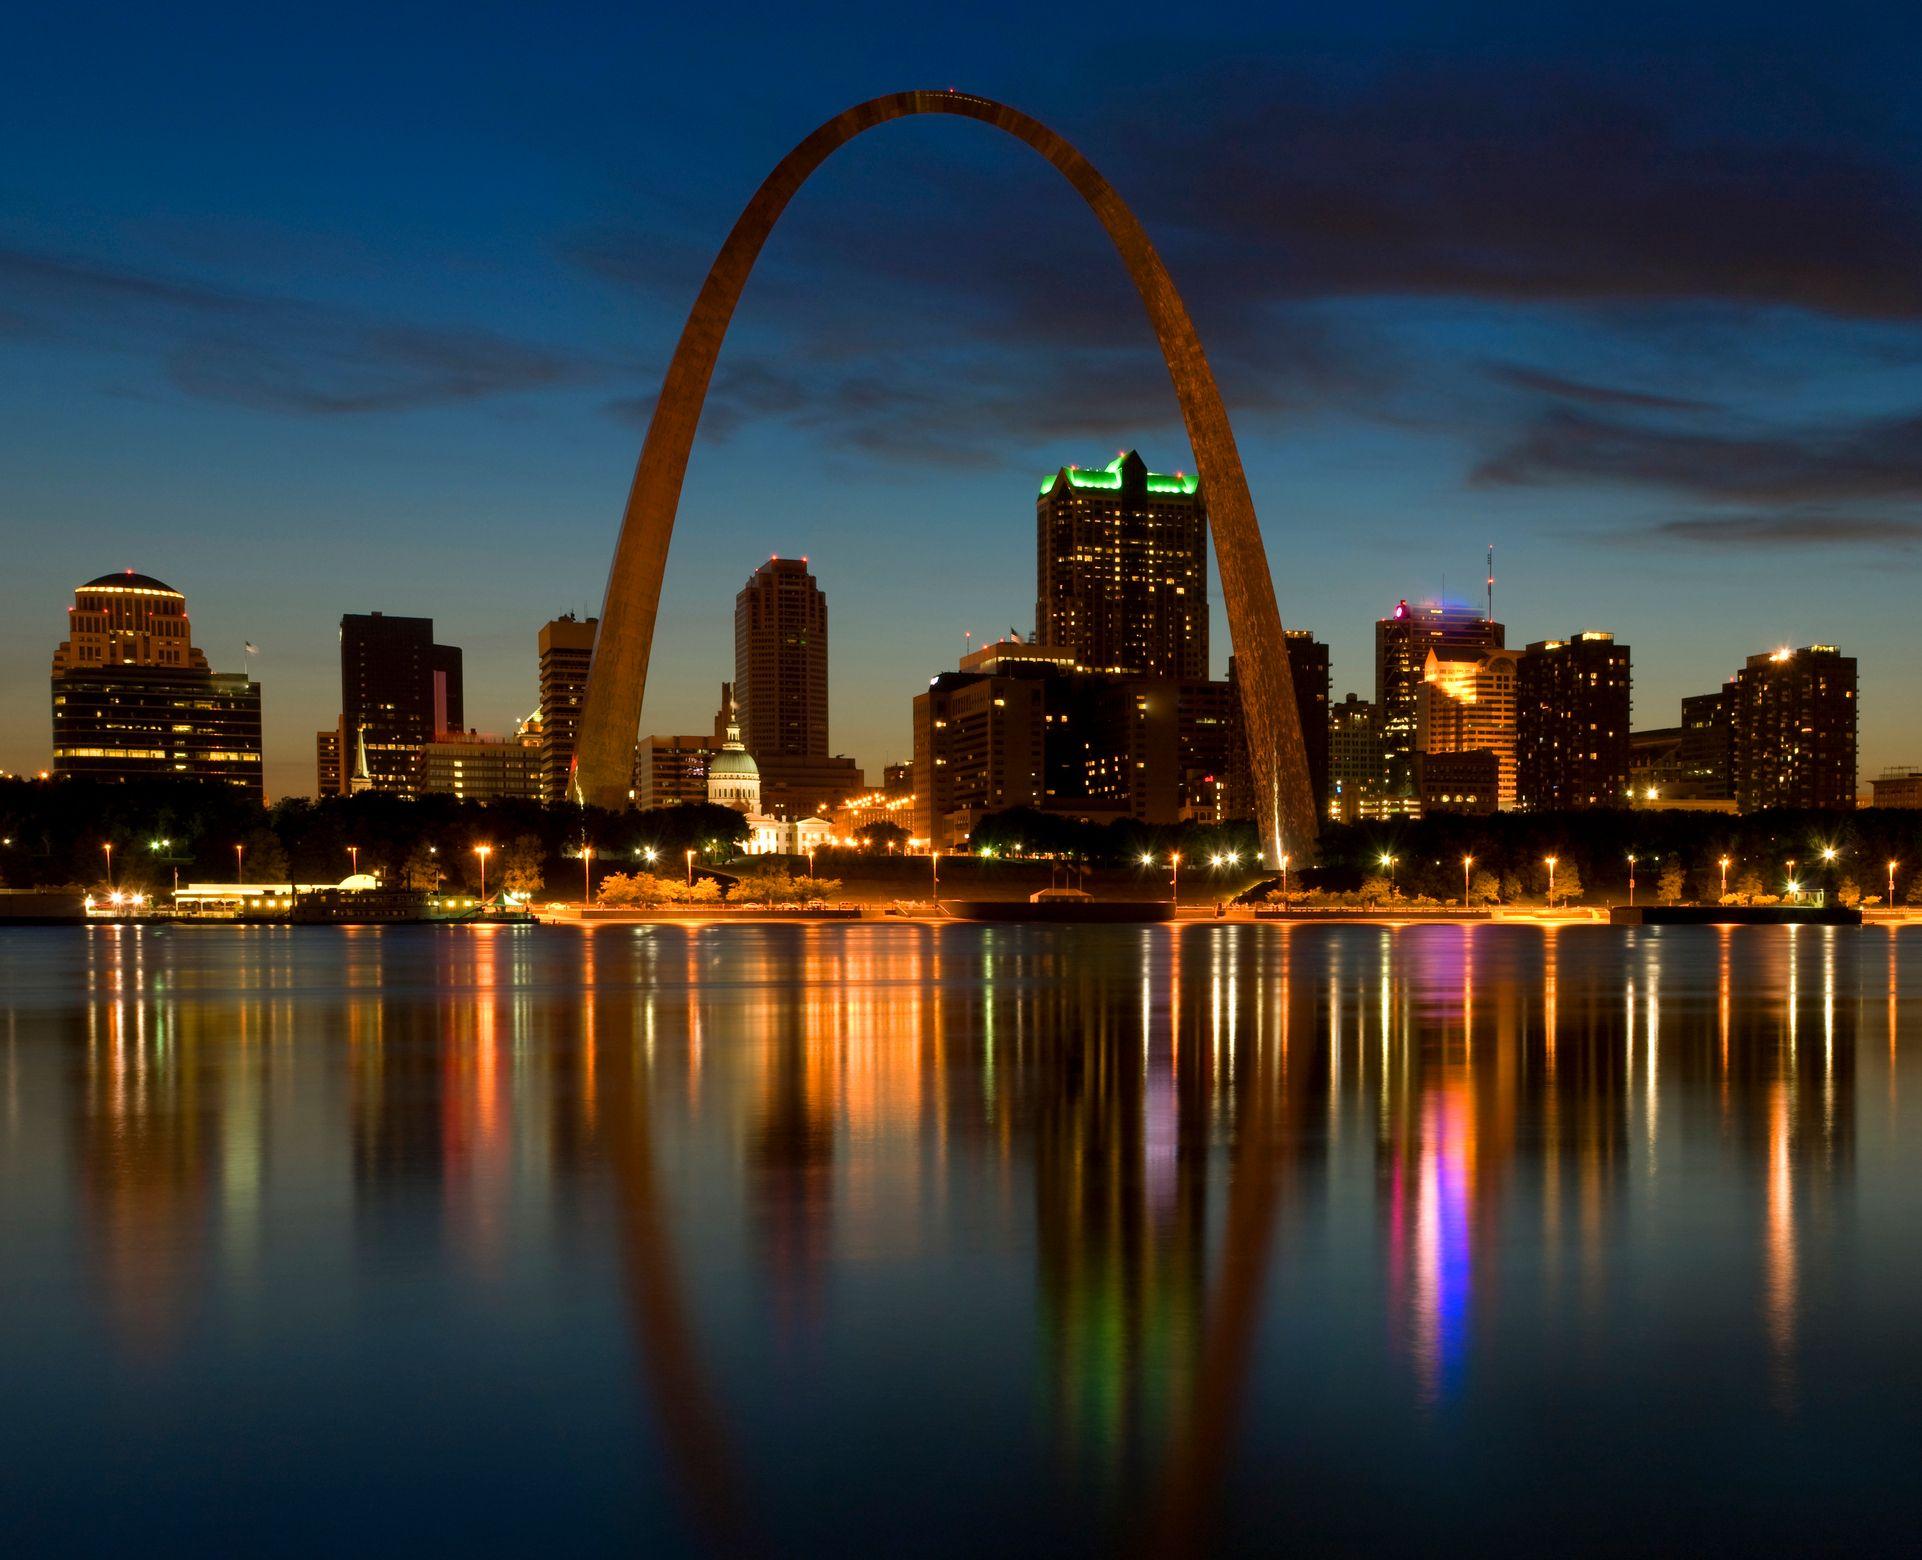 Vista de la ciudad de St. Louis con su emblemático arco.